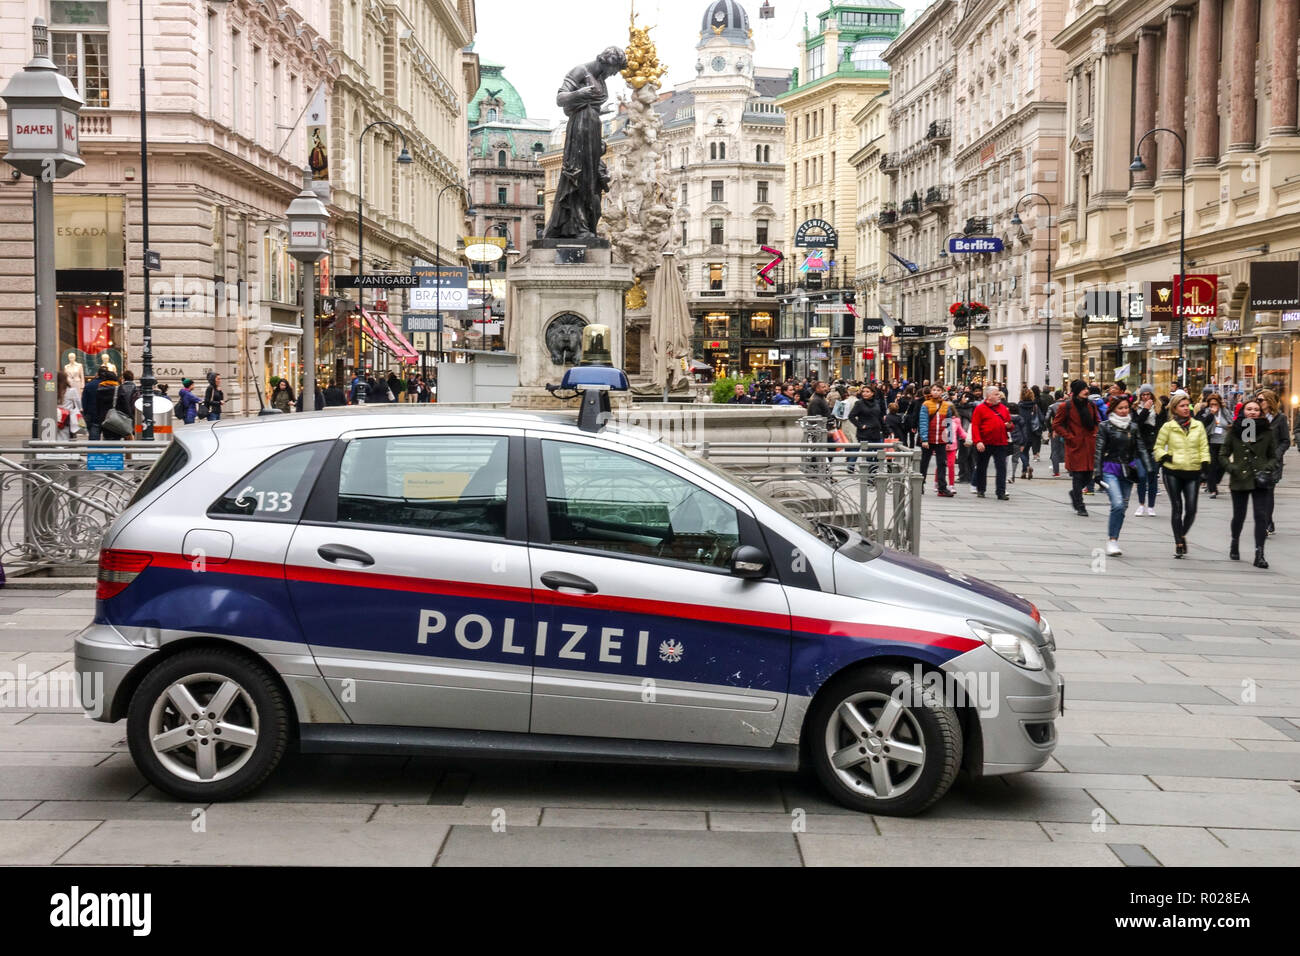 Österreichische Polizei Auto, Graben Straße, Wien, Österreich Stockfoto